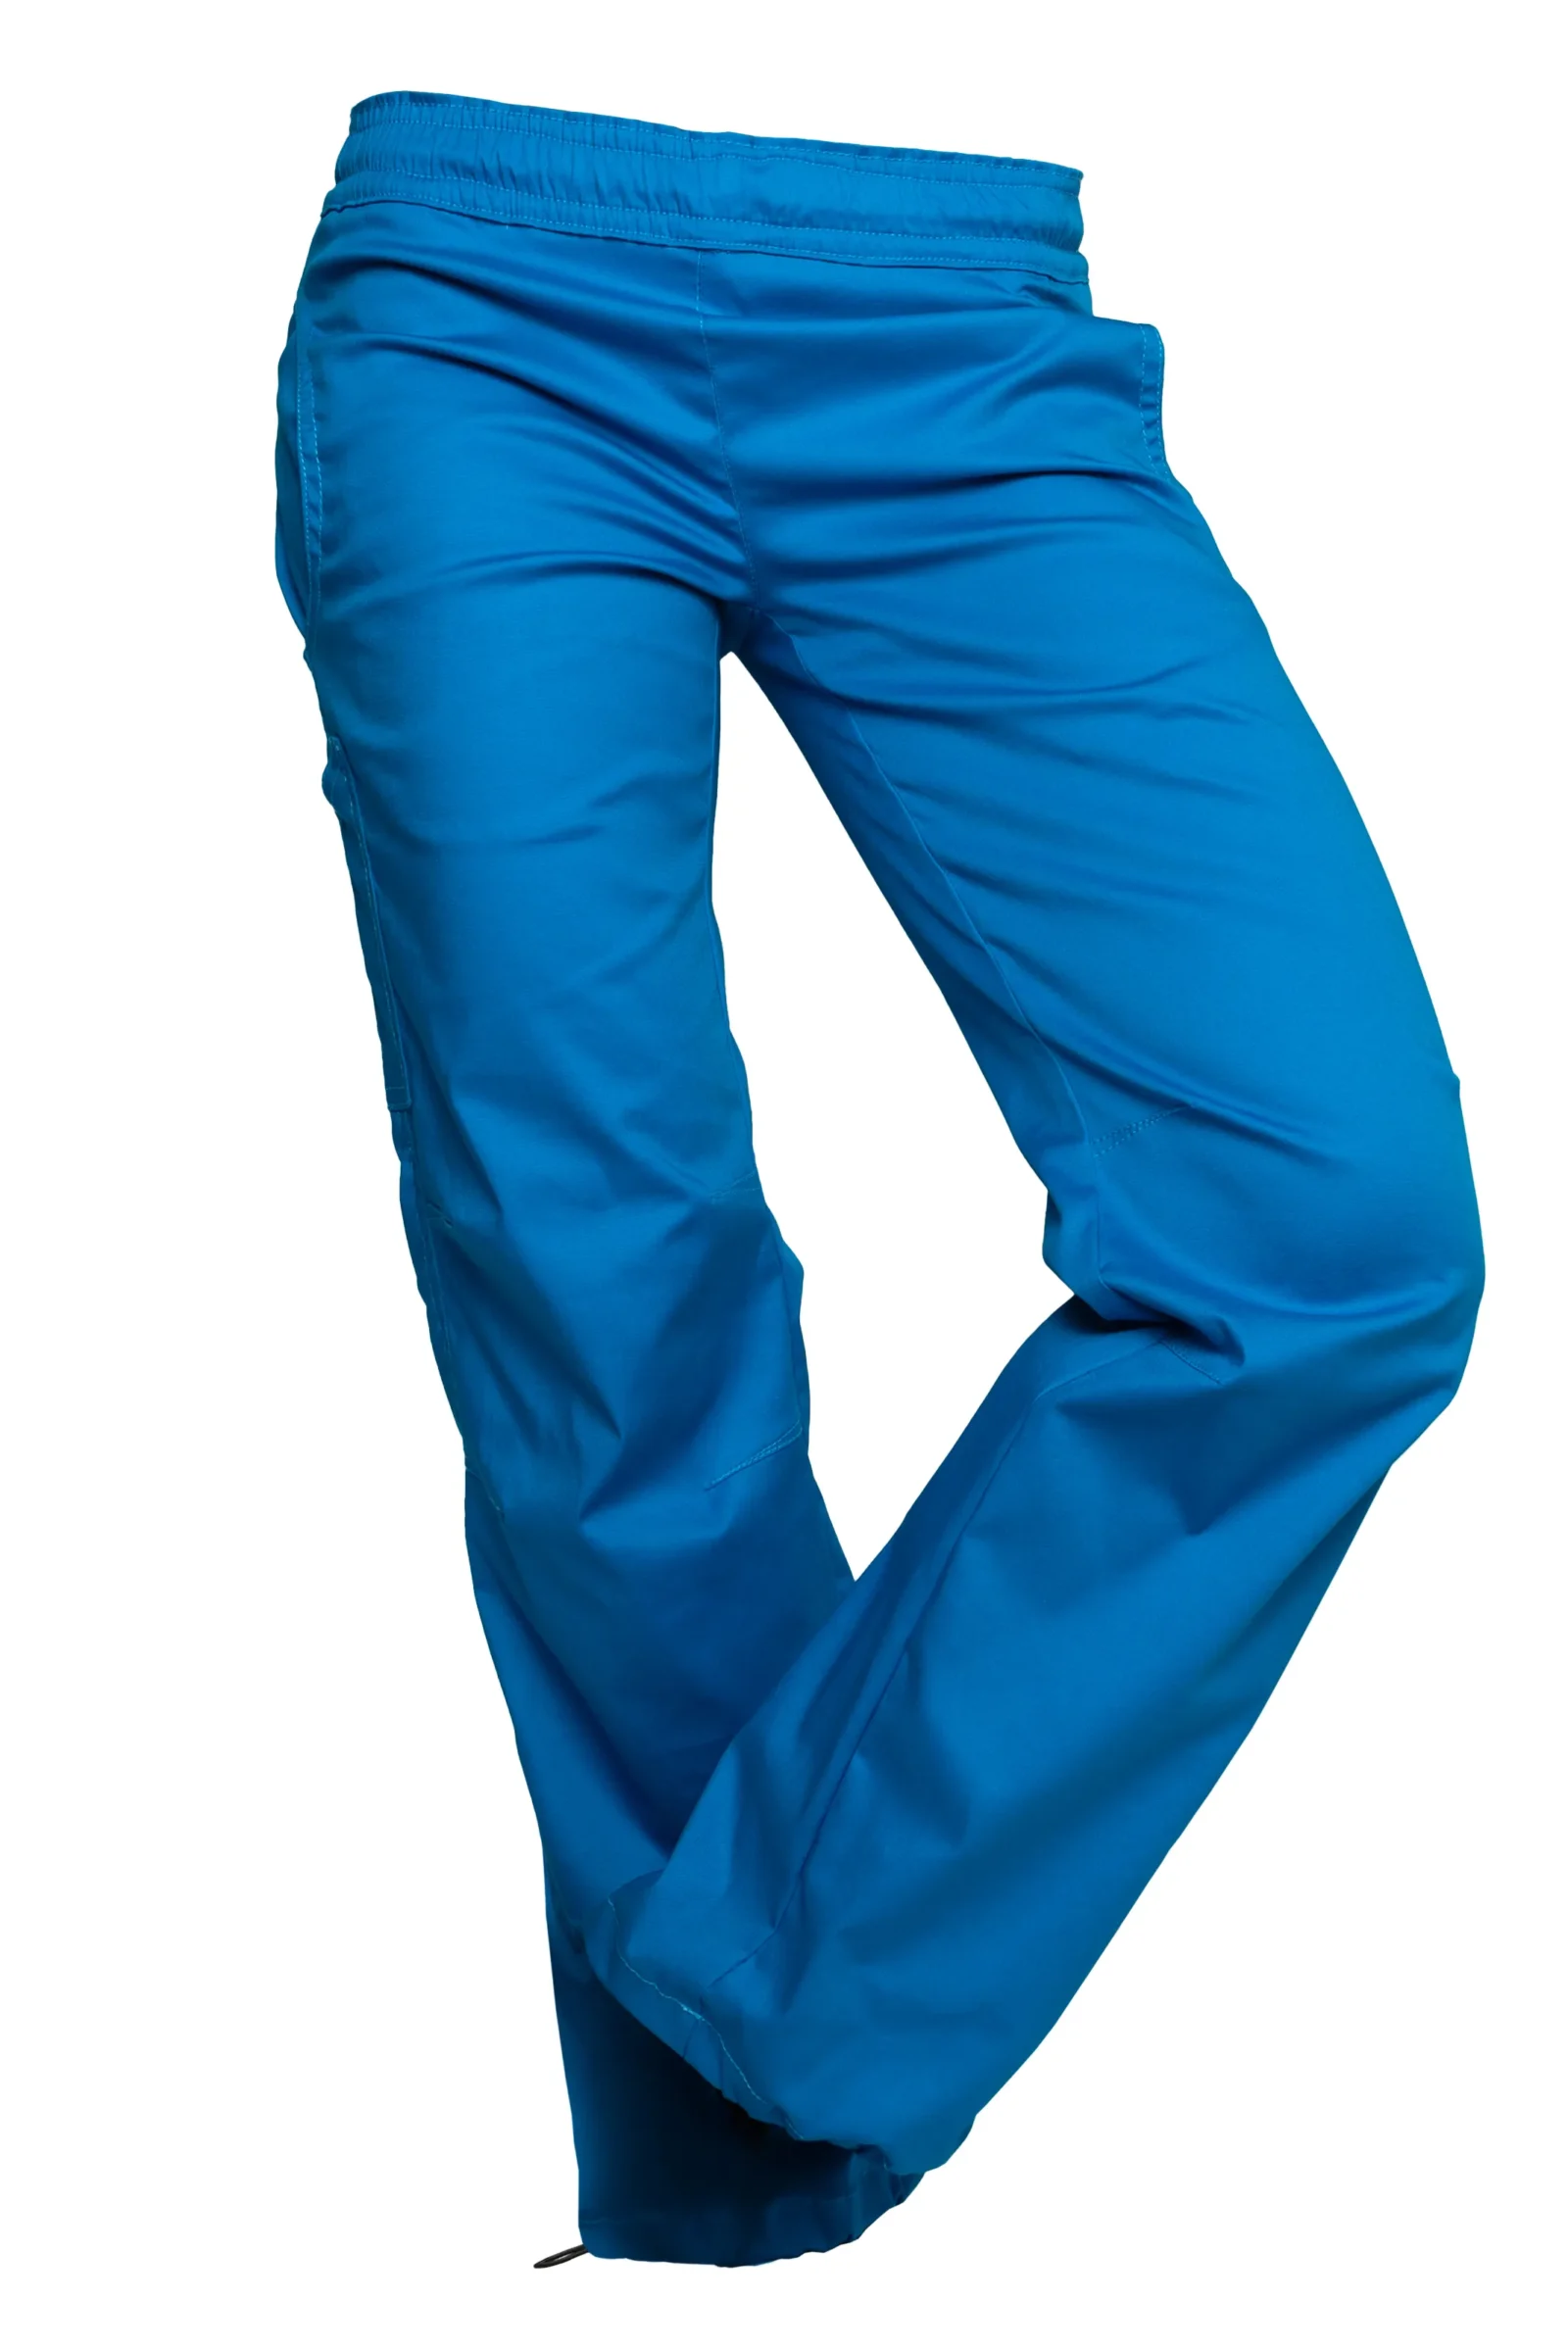 Pantalone sportivo da donna - azzurro - VIOLET Monvic